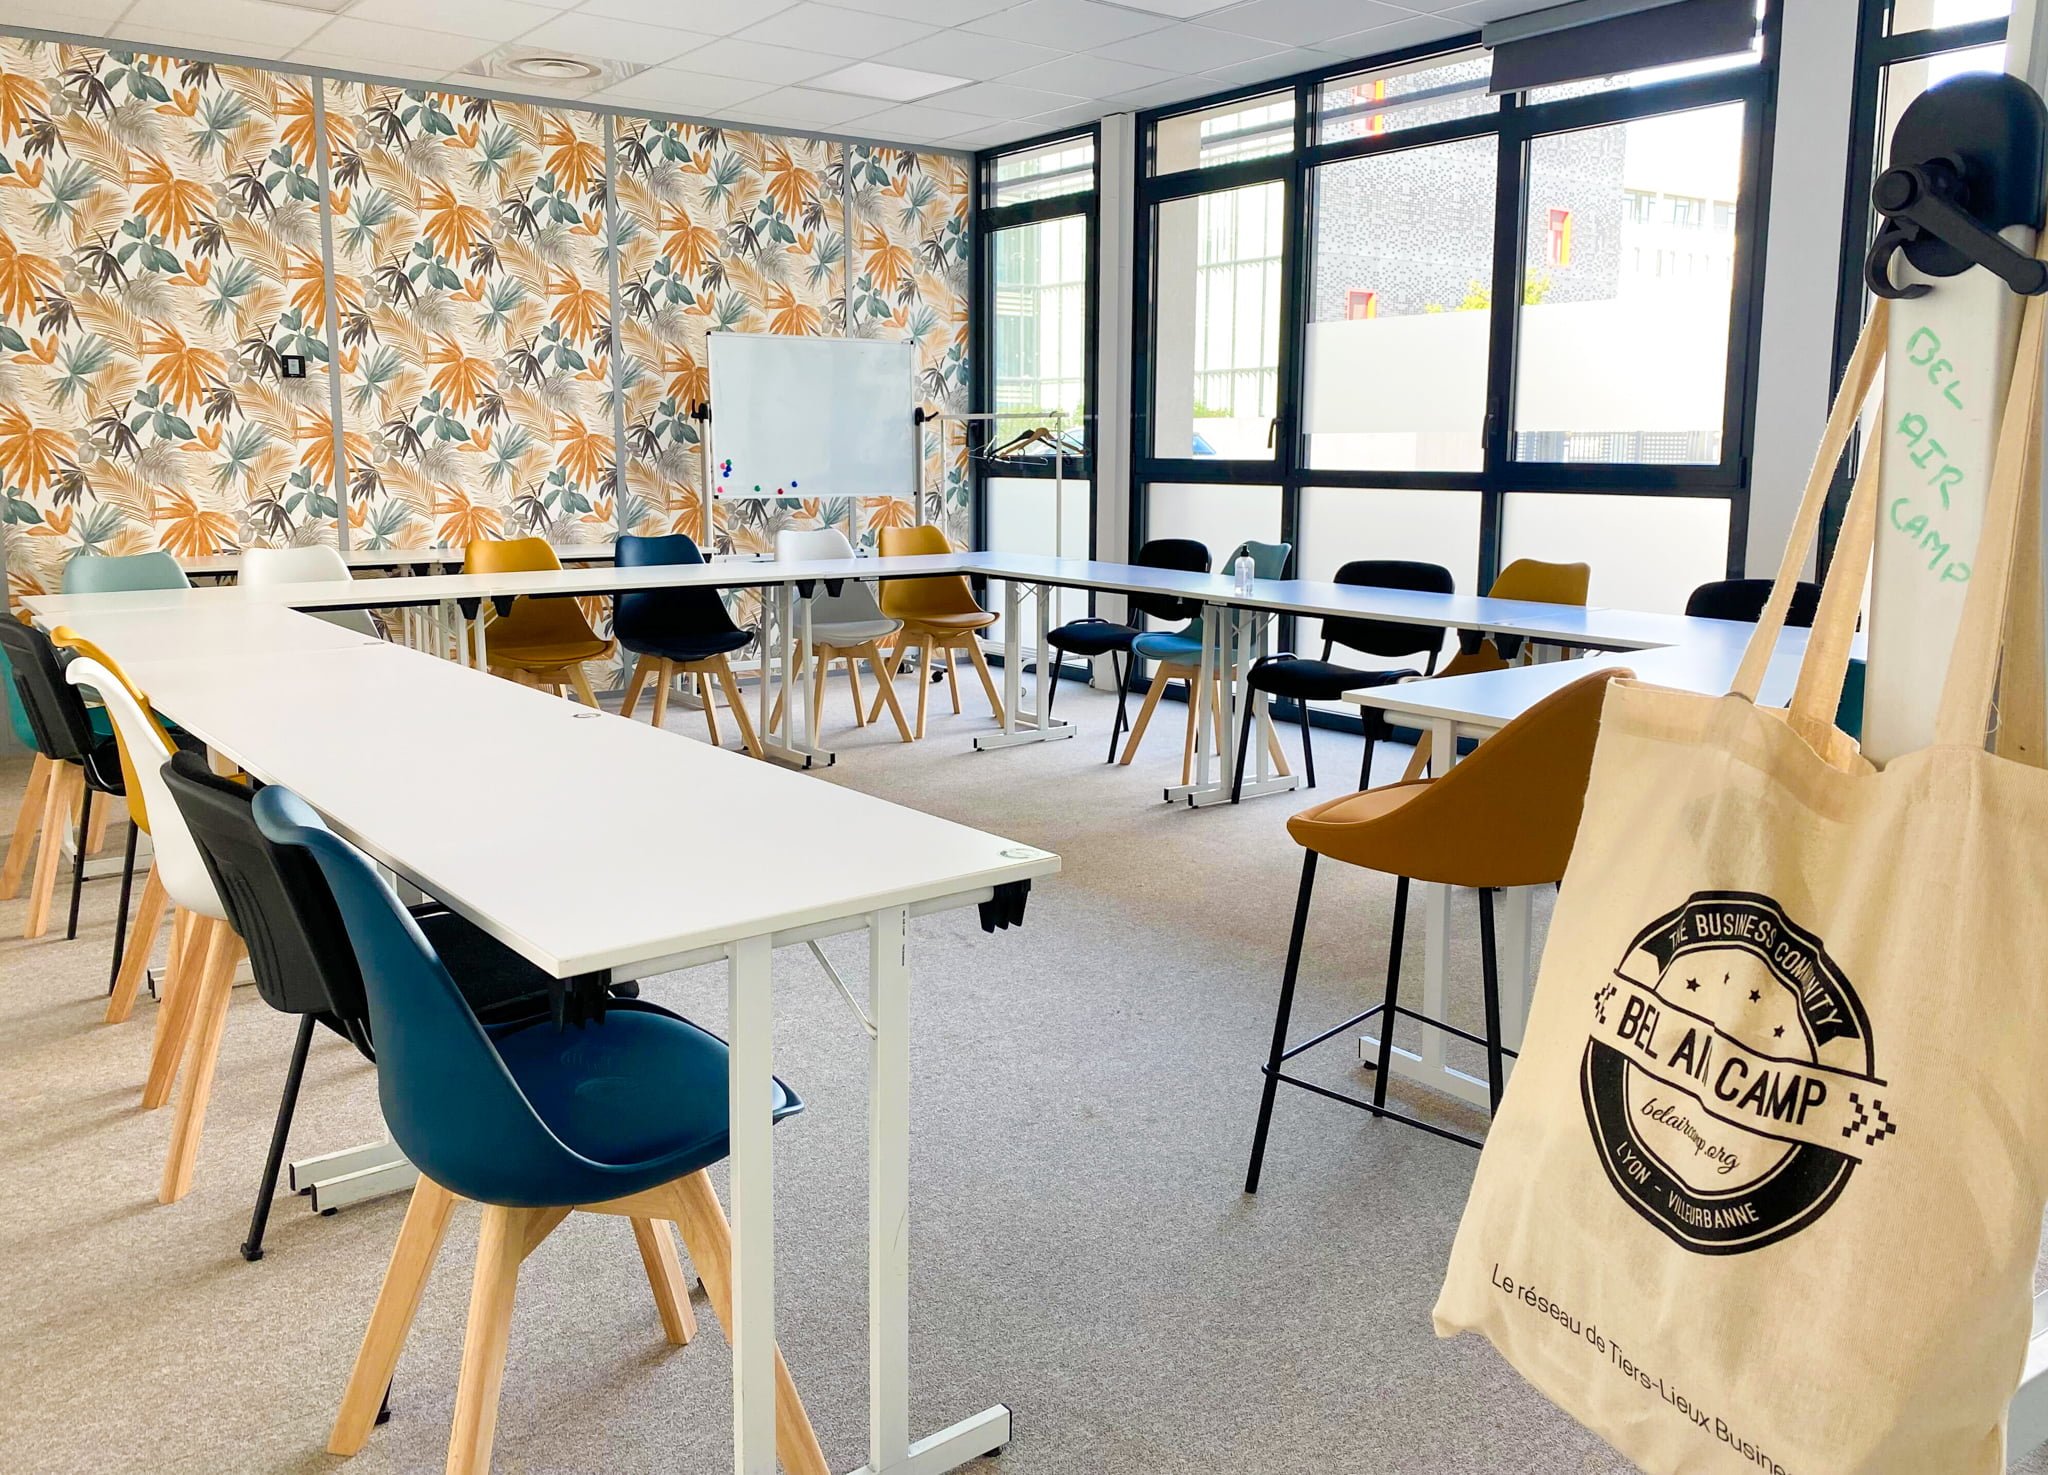 Notre salle de réunion James pouvant accueillir 25 personnes à Bel Air Camp réseau de Tiers-Lieux Business - coworking à Lyon et Villeurbanne 